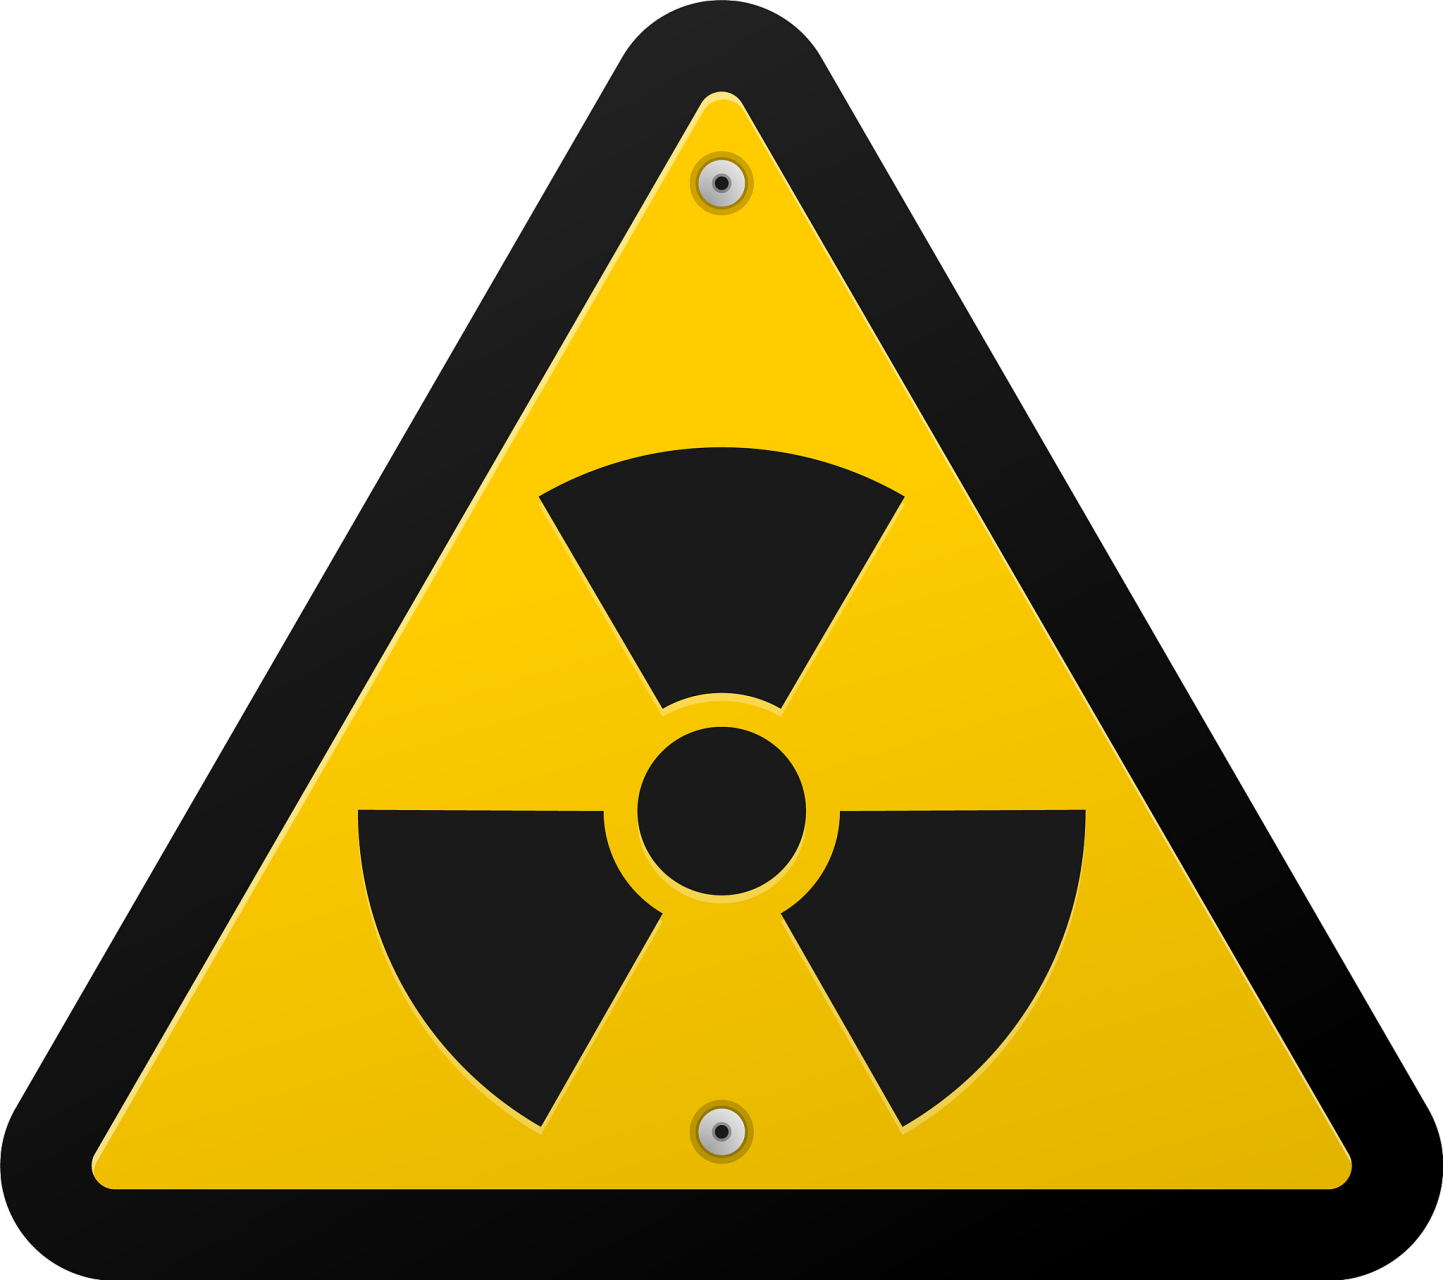 核辐射标志地区图片